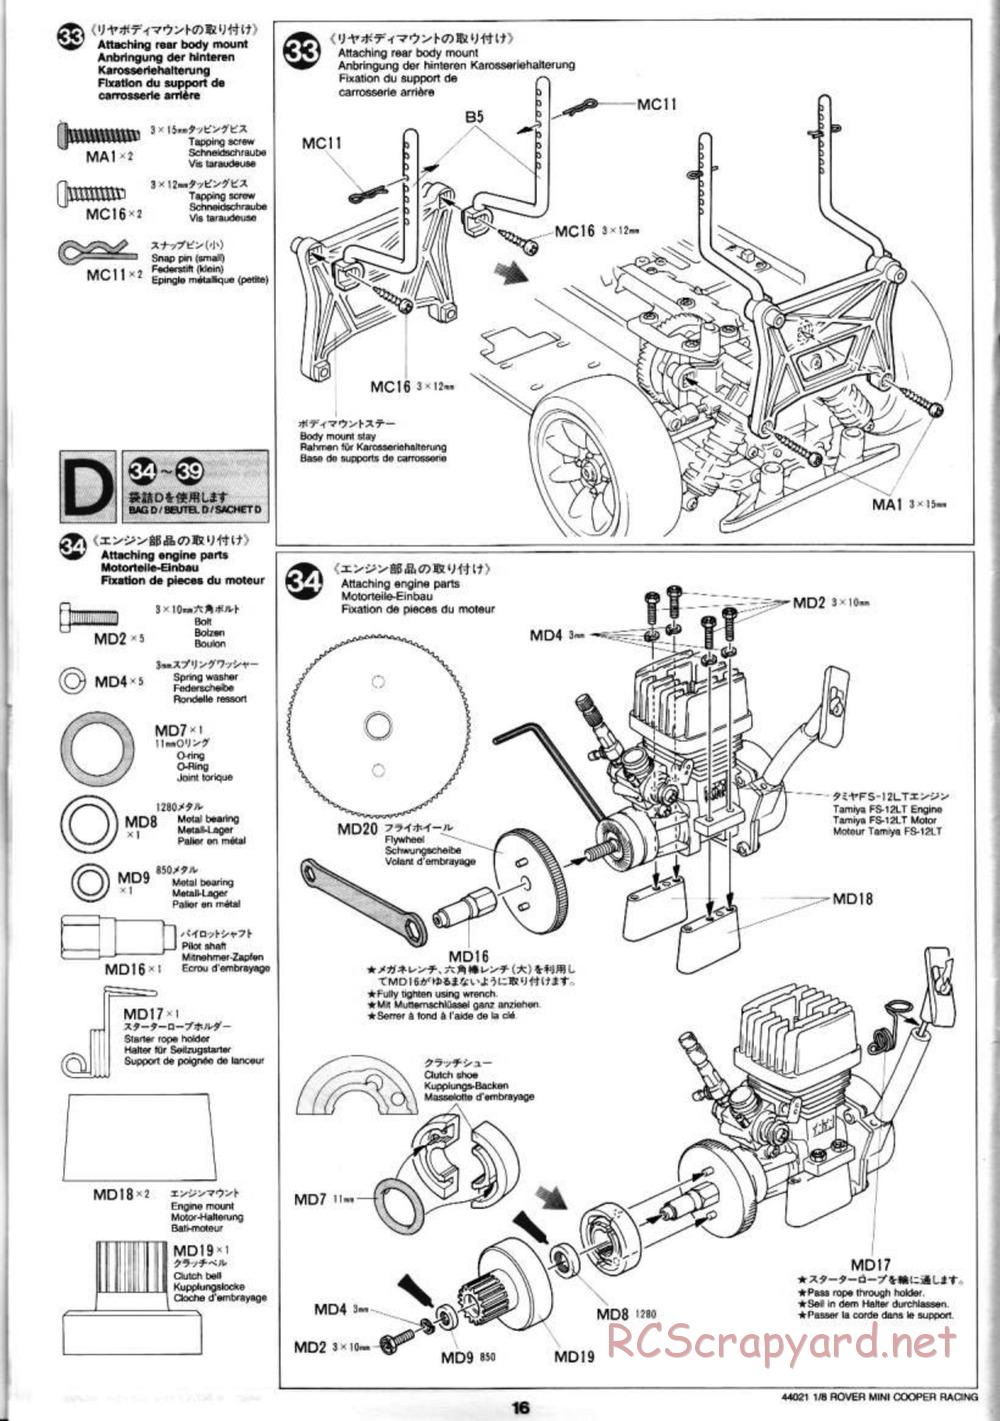 Tamiya - Rover Mini Cooper Racing - TG10 Mk.1 Chassis - Manual - Page 16